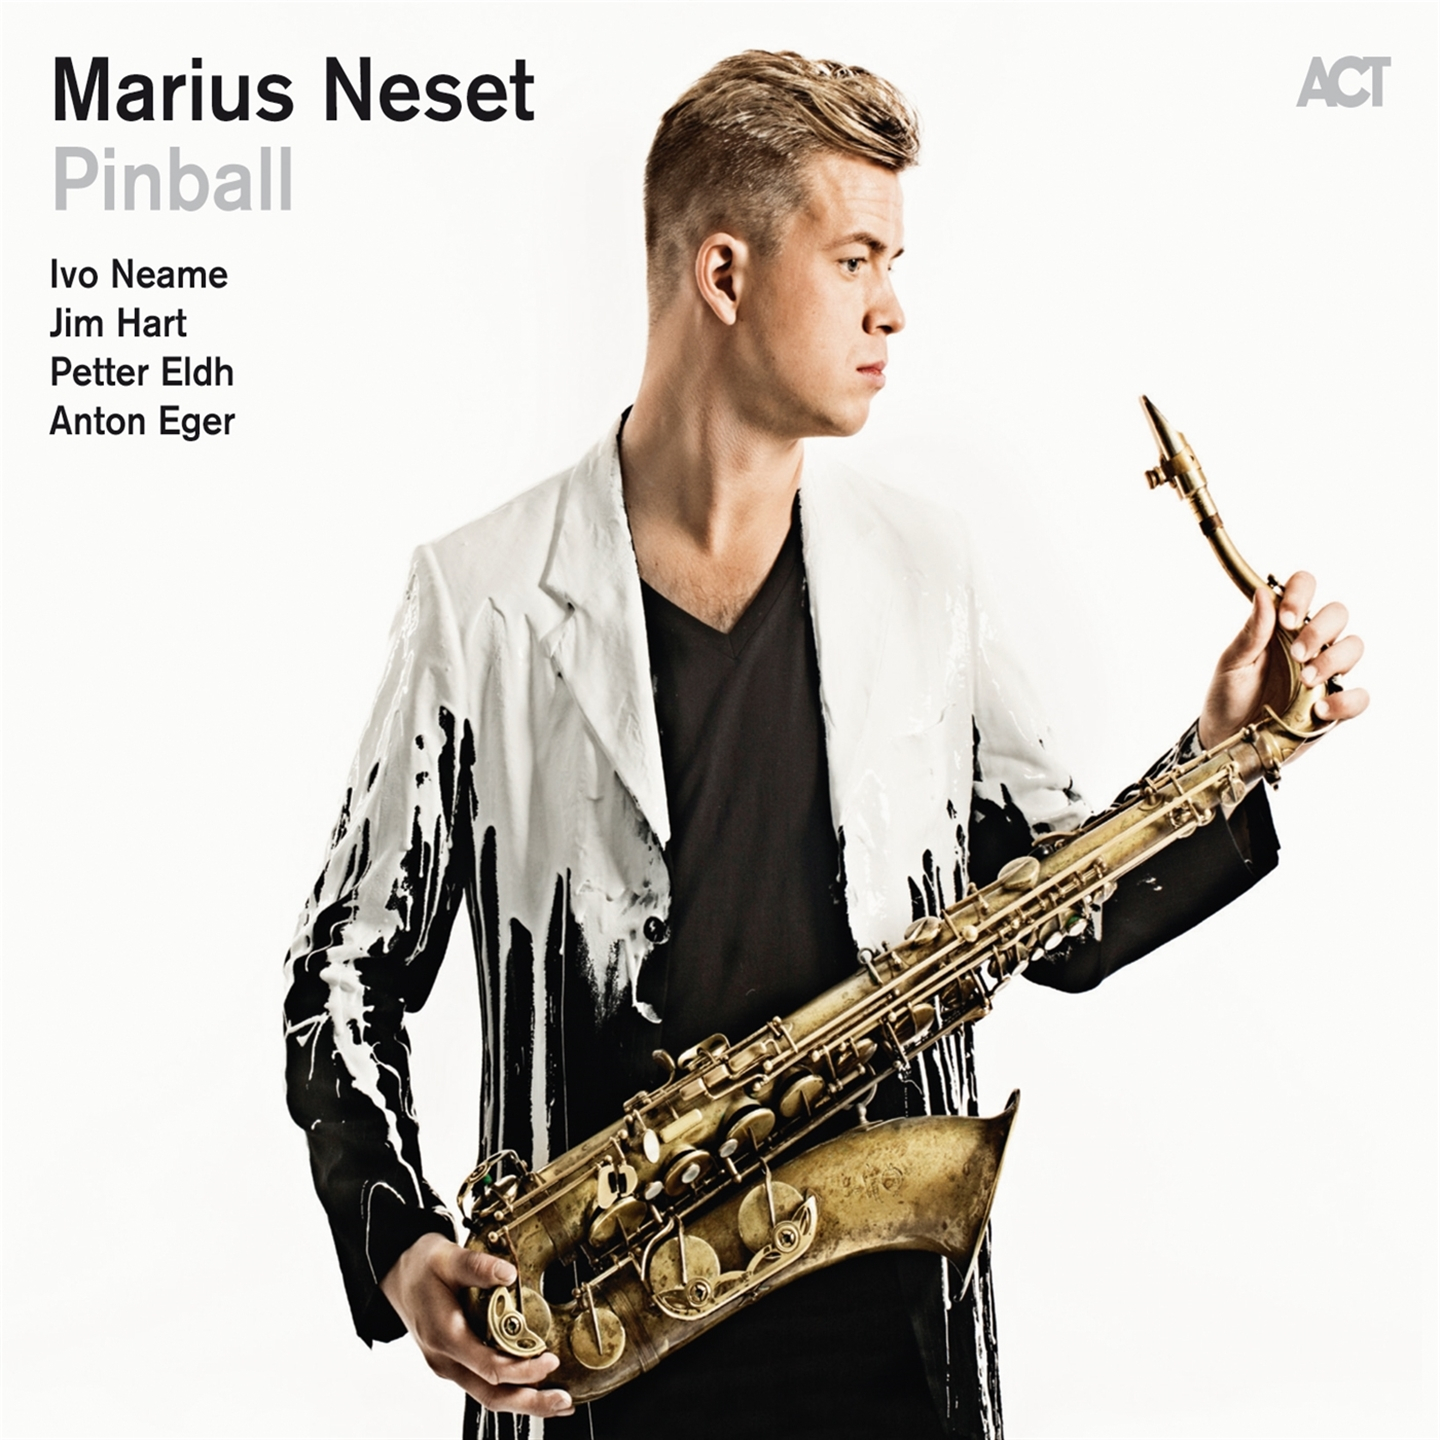 Marius Neset - Pinball - Picture 1 of 1